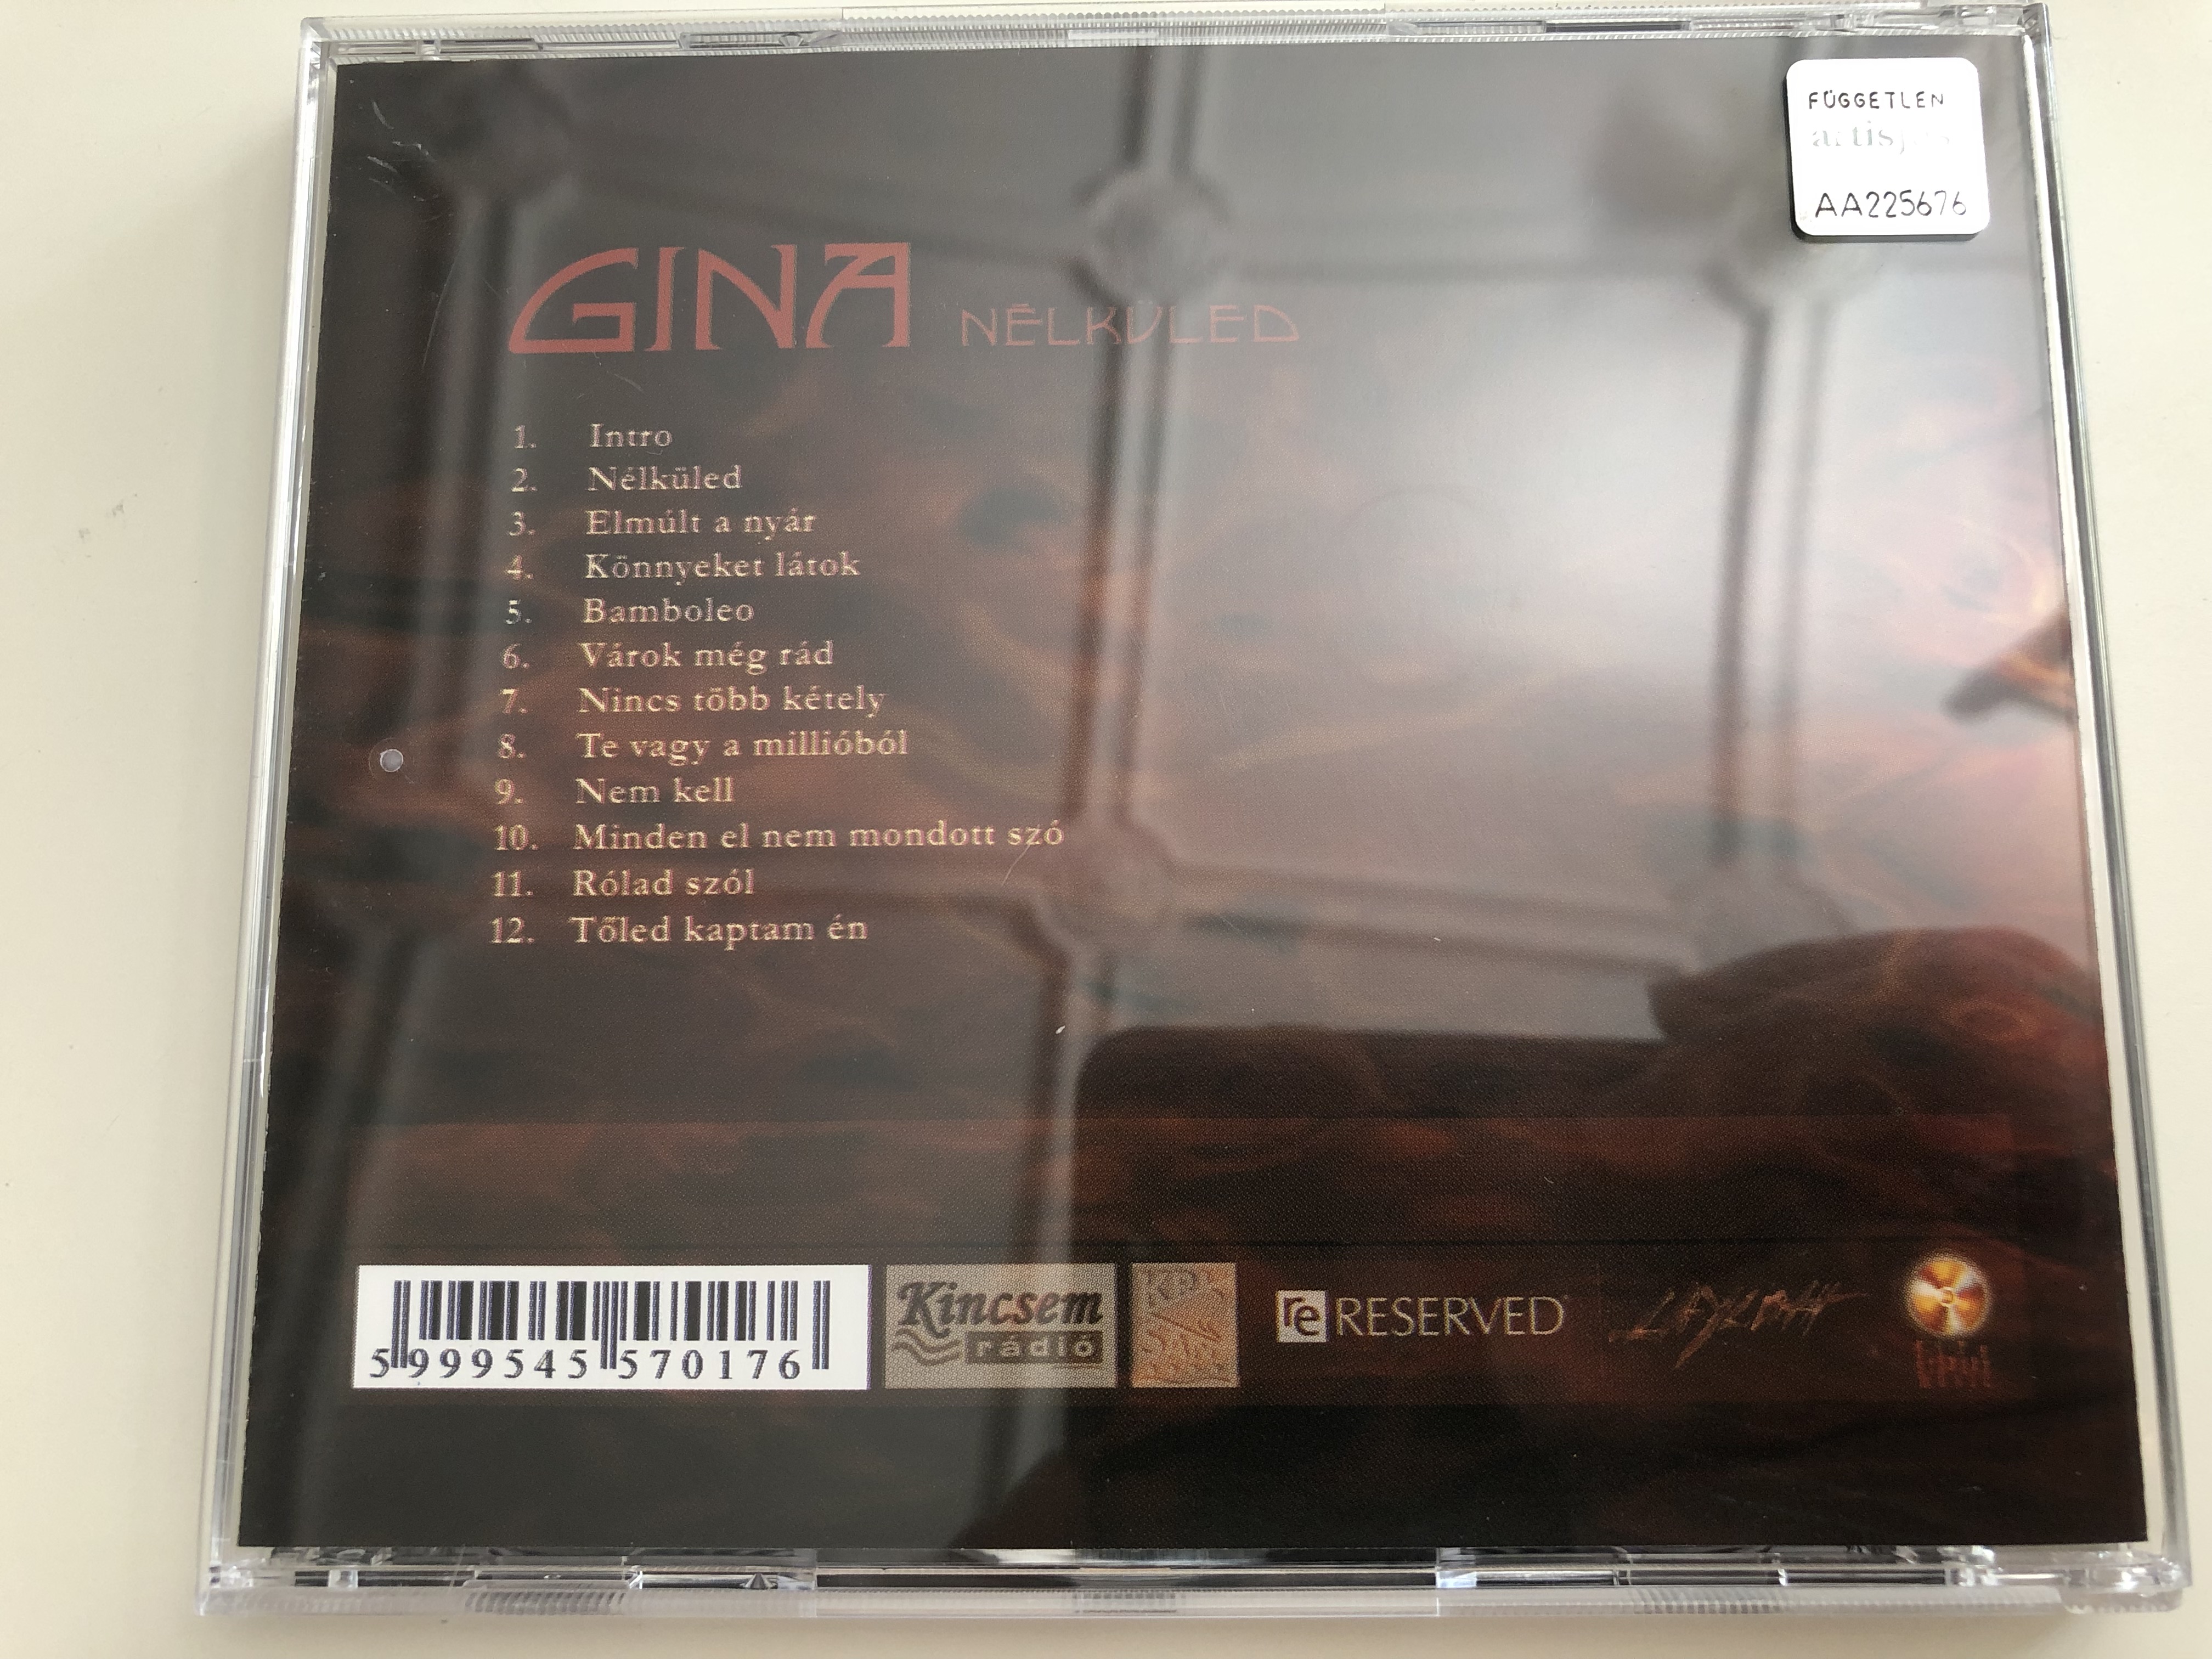 gina-n-lk-led-audio-cd-2004-firestarter-music-455701-7-7-.jpg